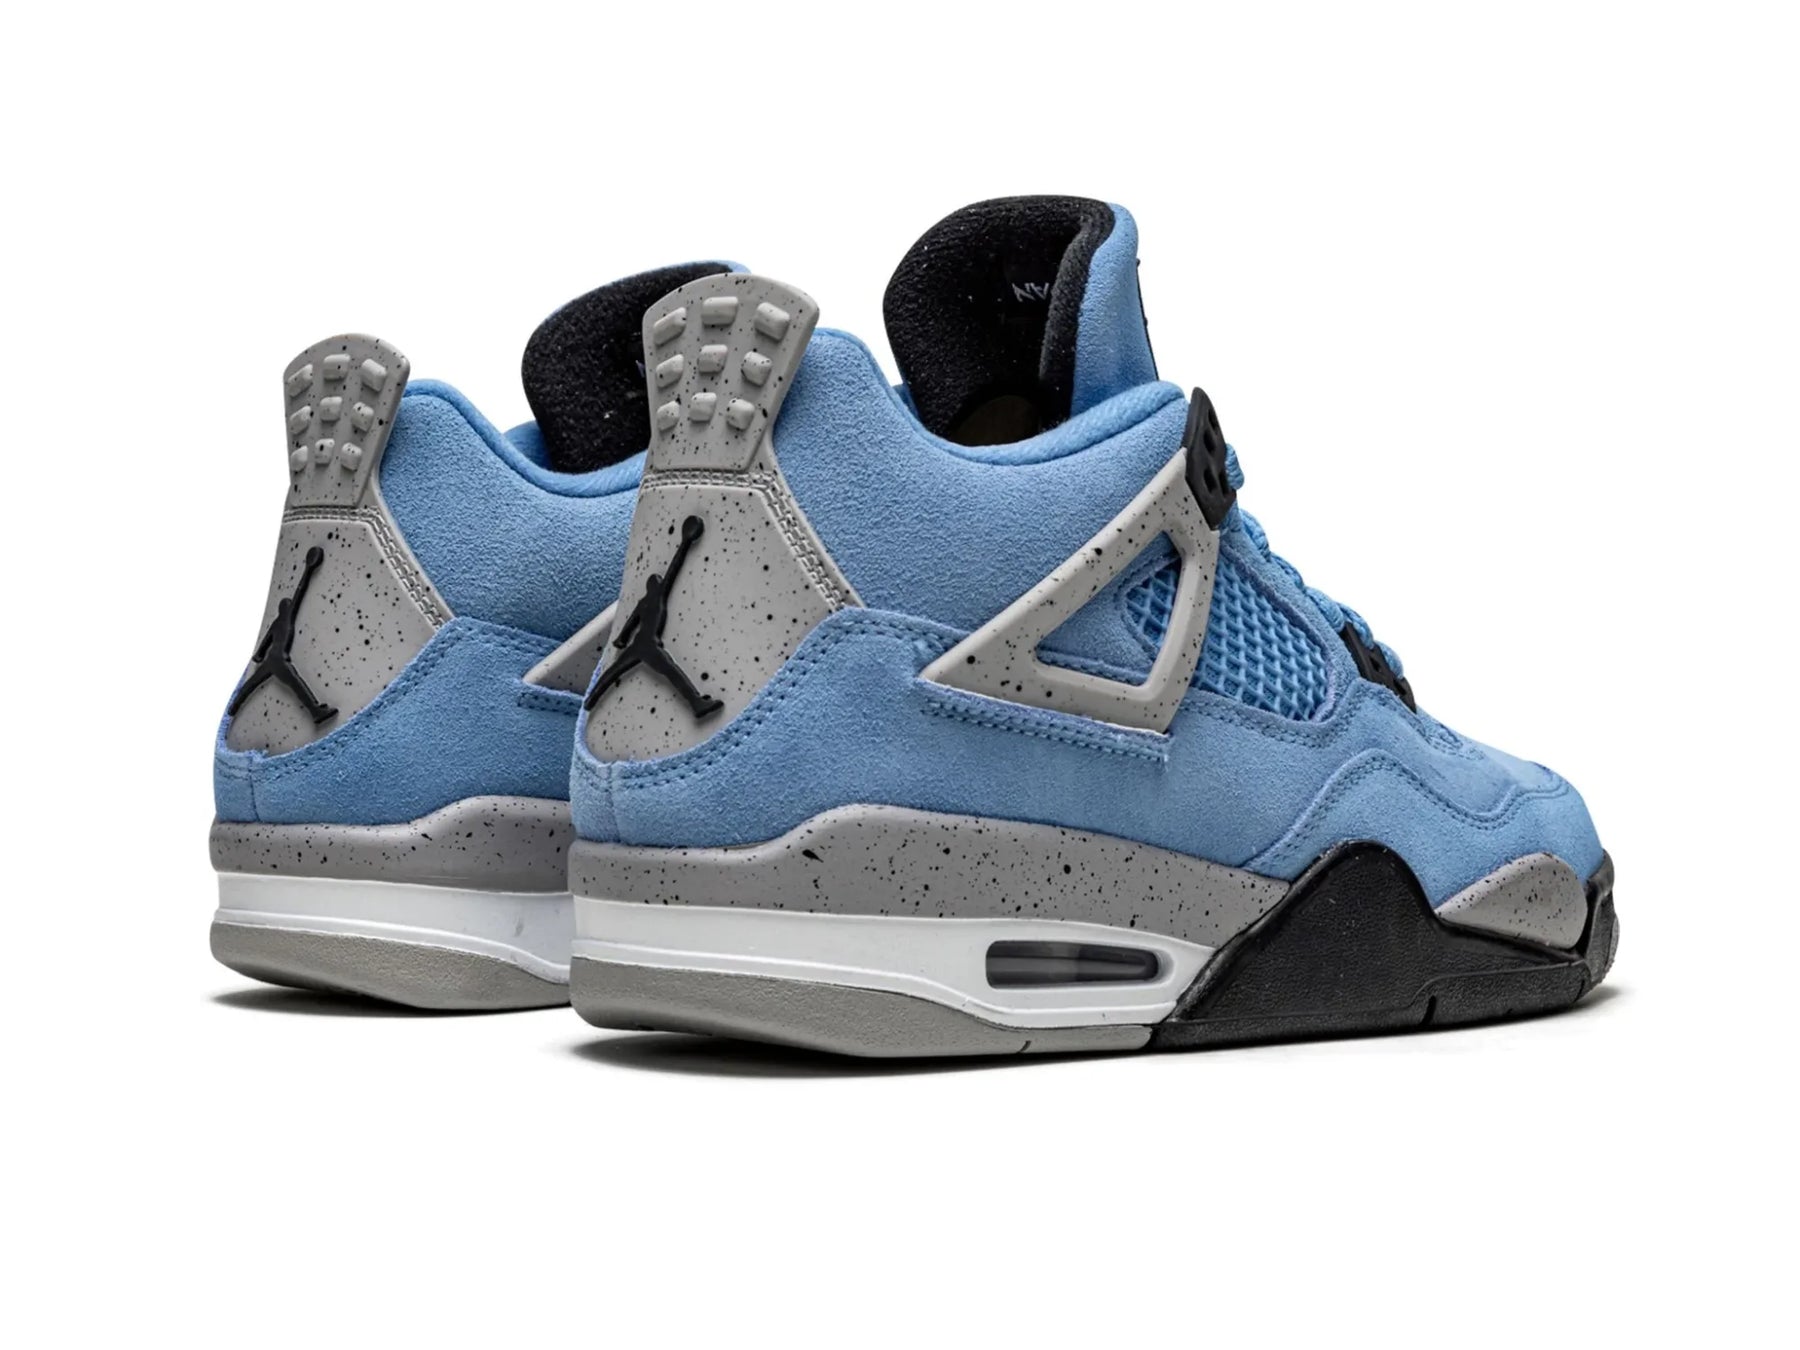 Nike Air Jordan 4 Retro "University Blue" - street-bill.dk